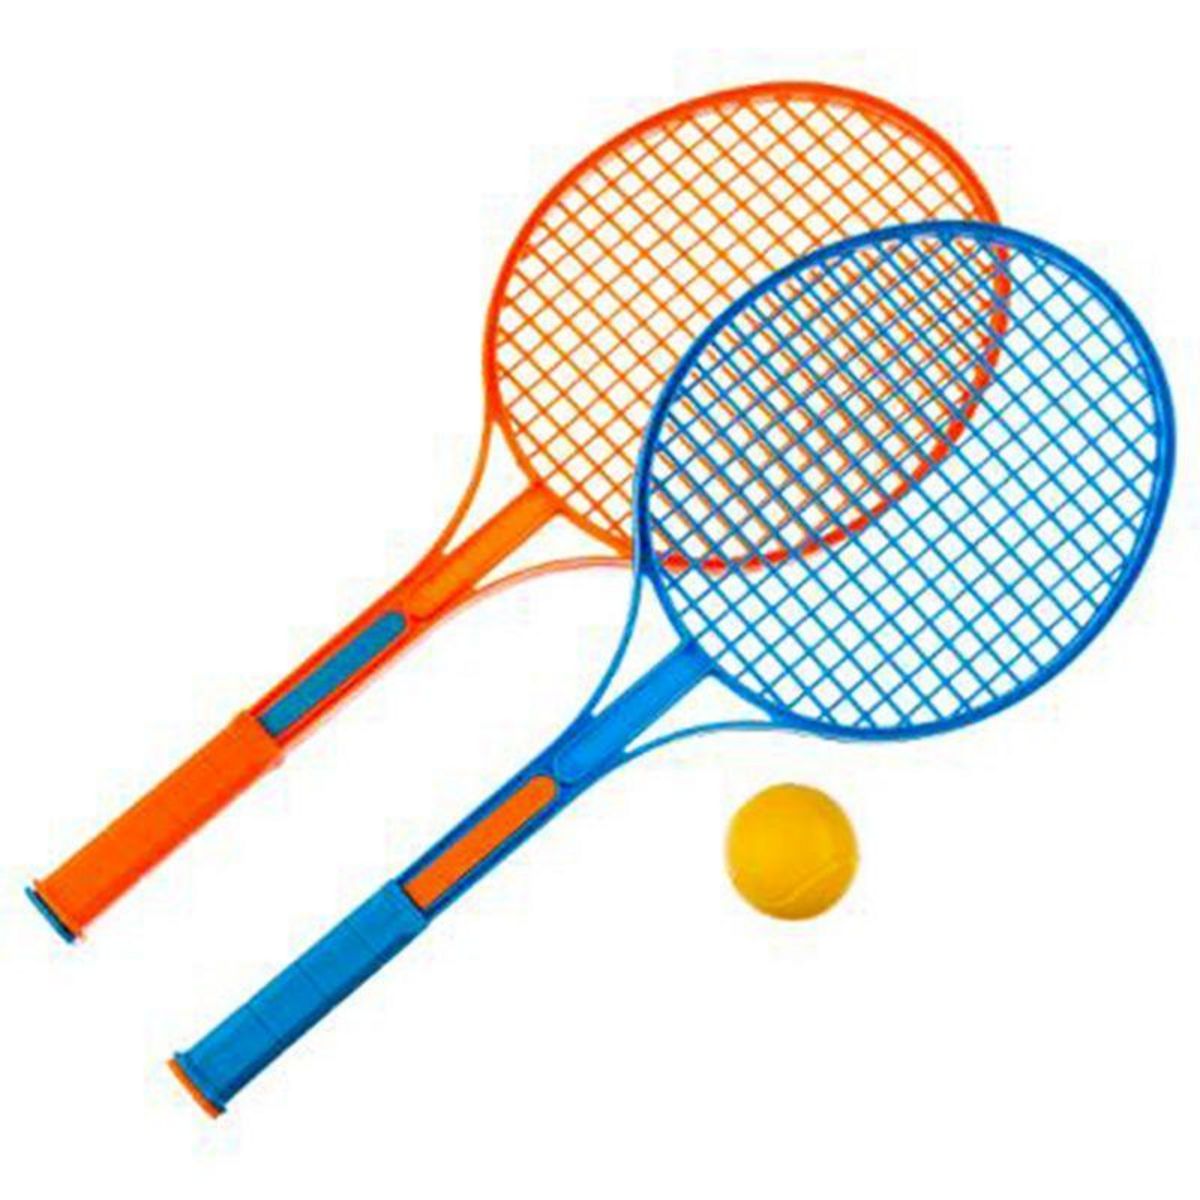  Lot de 2 Raquettes de Tennis  1 Balle  52cm Orange & Bleu